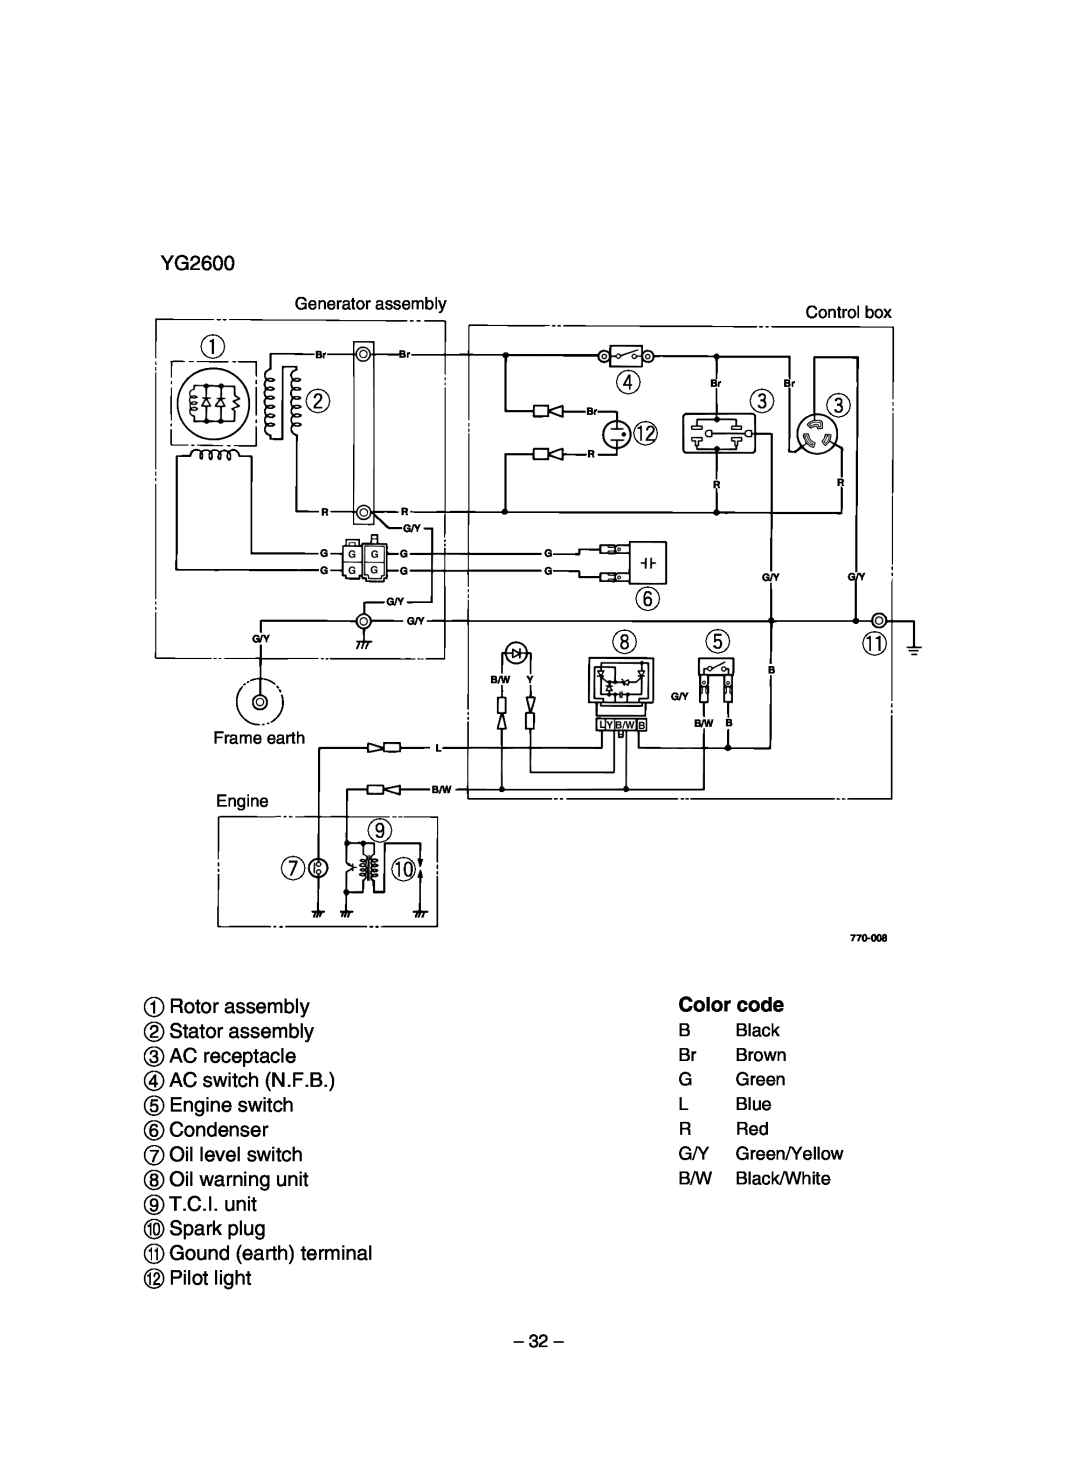 Yamaha EF1600, EF2600, YG2600 owner manual o u !0, Generator assembly, Control box 